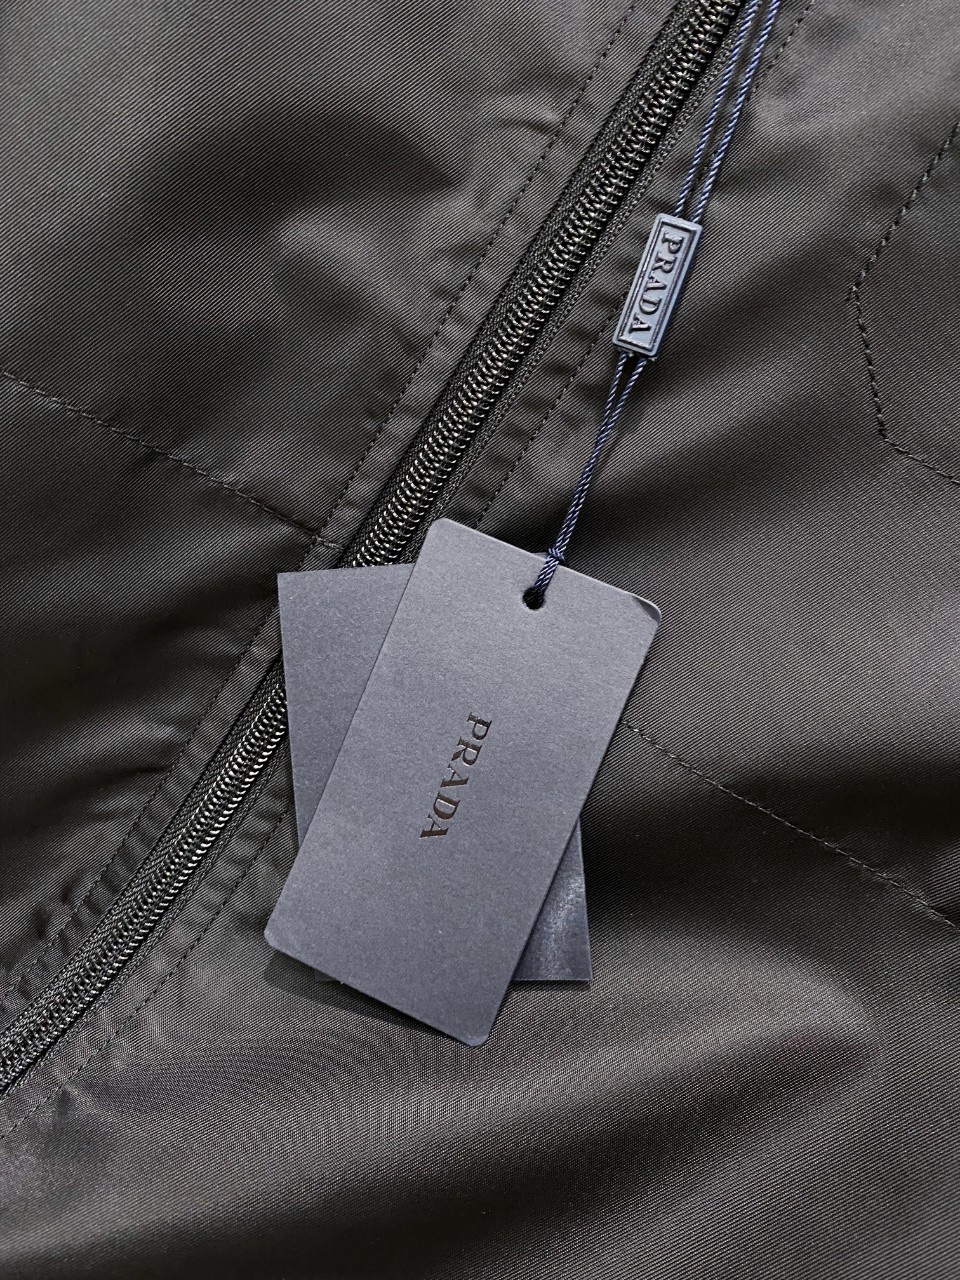 新款普拉达夹克外套穿搭随意切换风格简单又时髦！高端定制复合布面料手感比以往做的要柔软的多舒适度高原厂五金